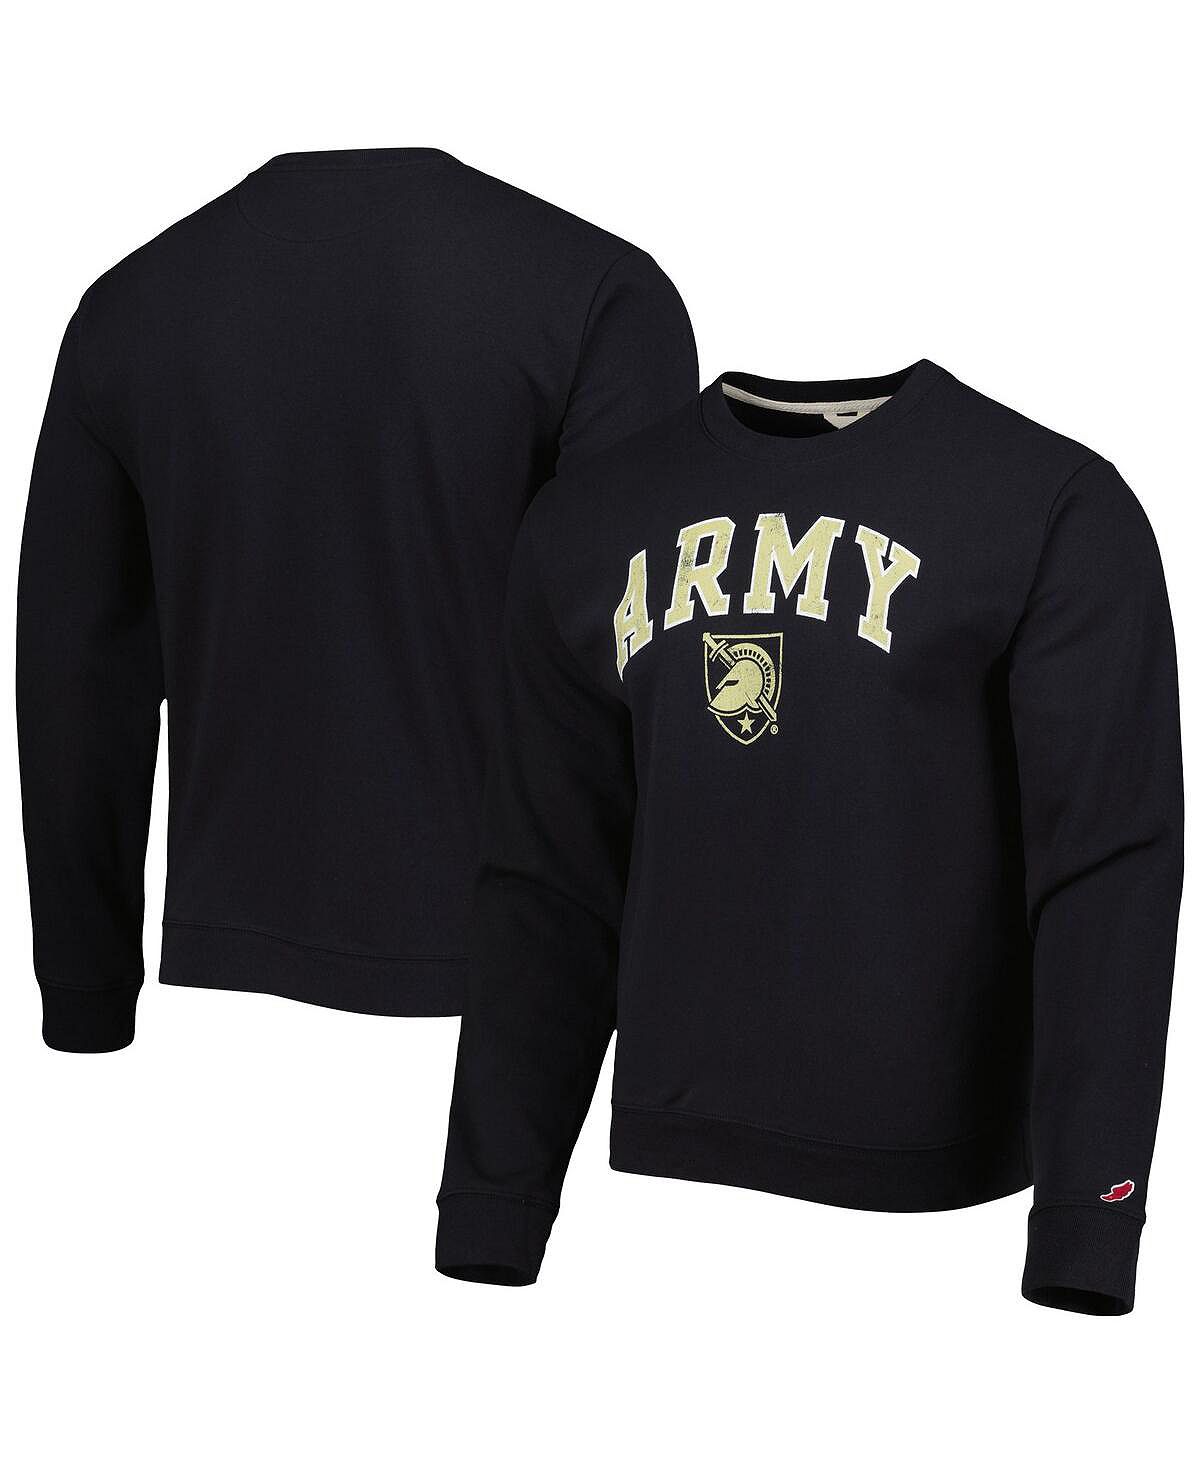 Мужская черная толстовка с флисовым пуловером army black knights 1965 arch essential League Collegiate Wear, черный